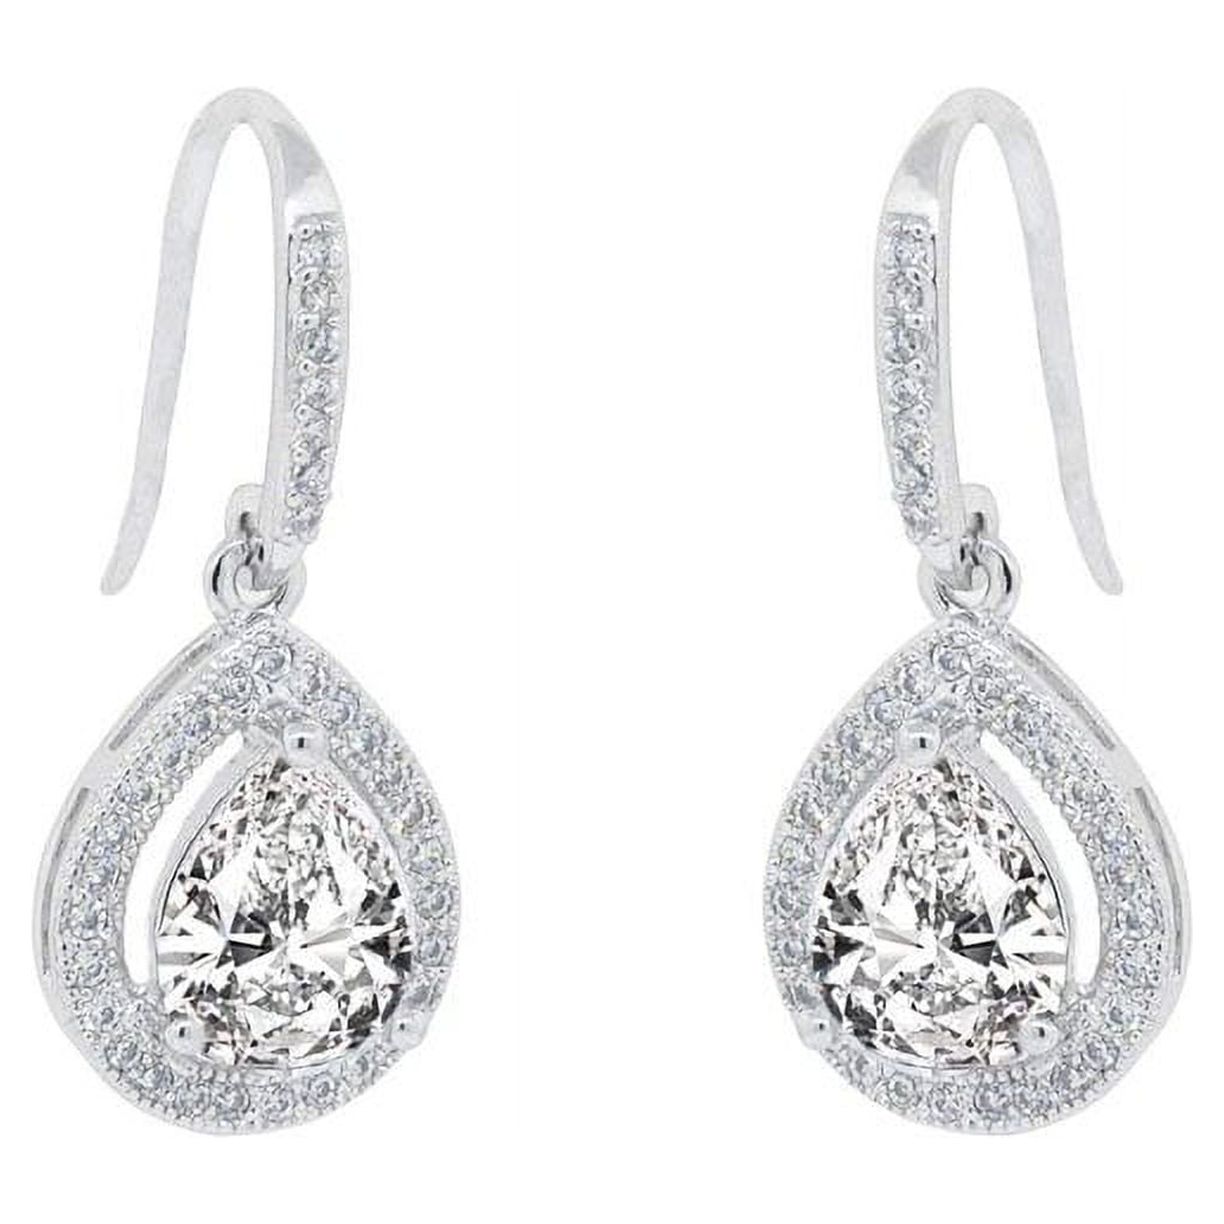 Cate & Chloe Isabel 18k White Gold Plated Silver Crystal Earrings | Women's Drop Dangle Teardrop Earrings - image 1 of 8